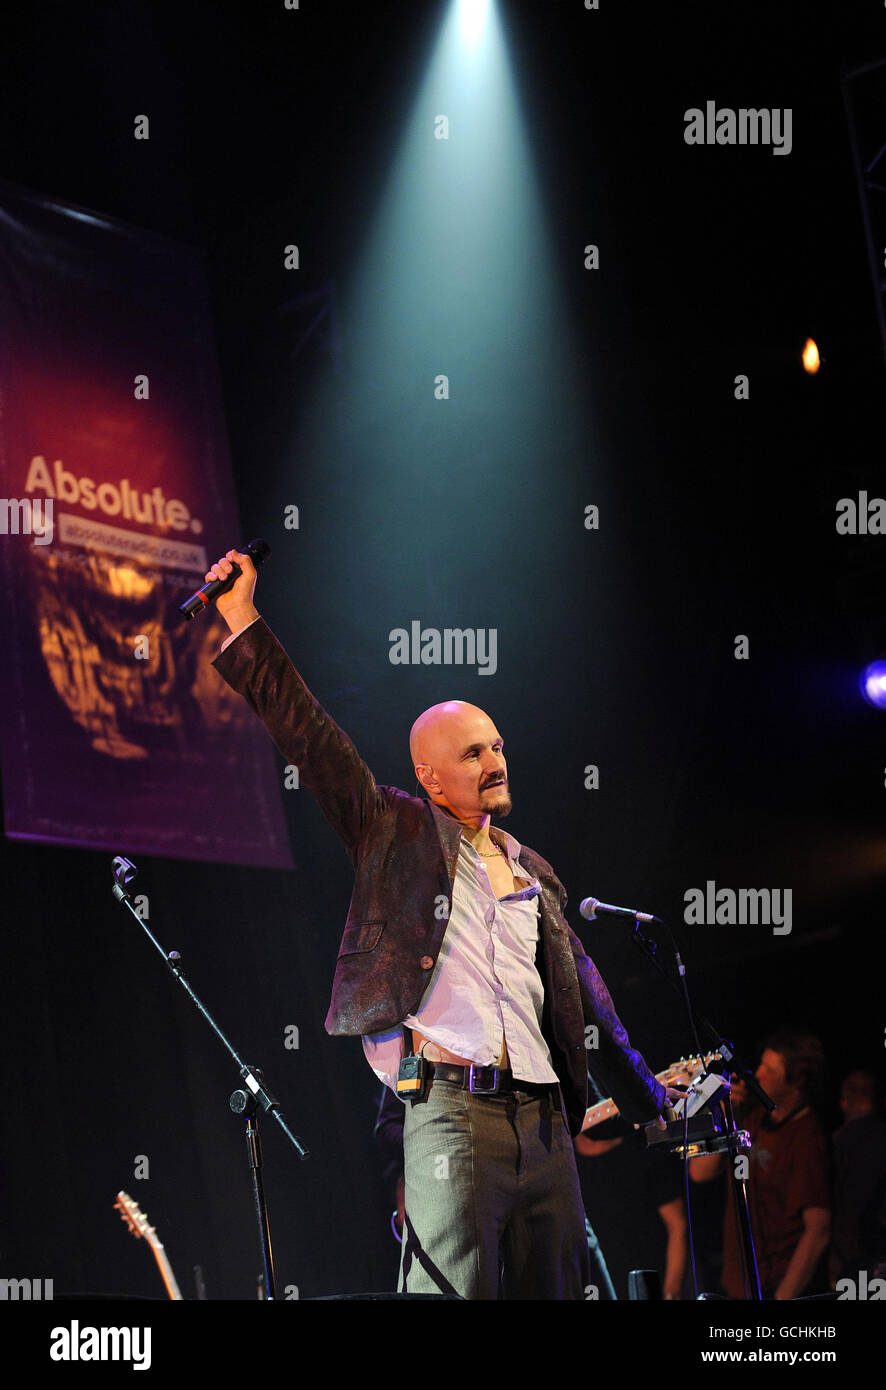 Tim Booth di James sul palco dell'Absolute radio South Africa Send Off Party, al Lyric Theatre nel centro di Londra. Foto Stock